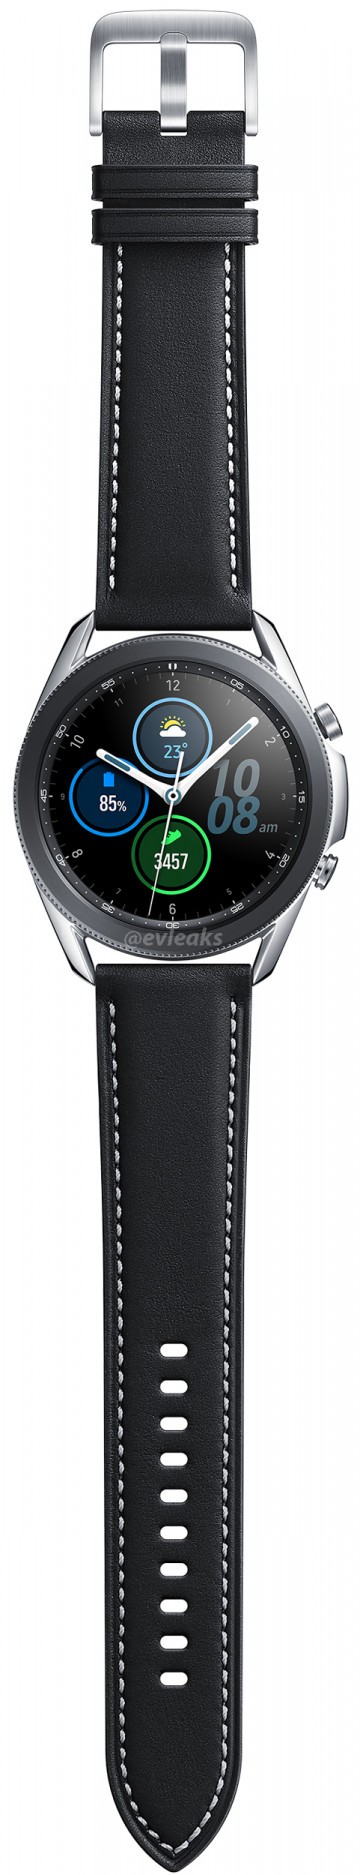 Три версии Samsung Galaxy Watch 3 во плоти